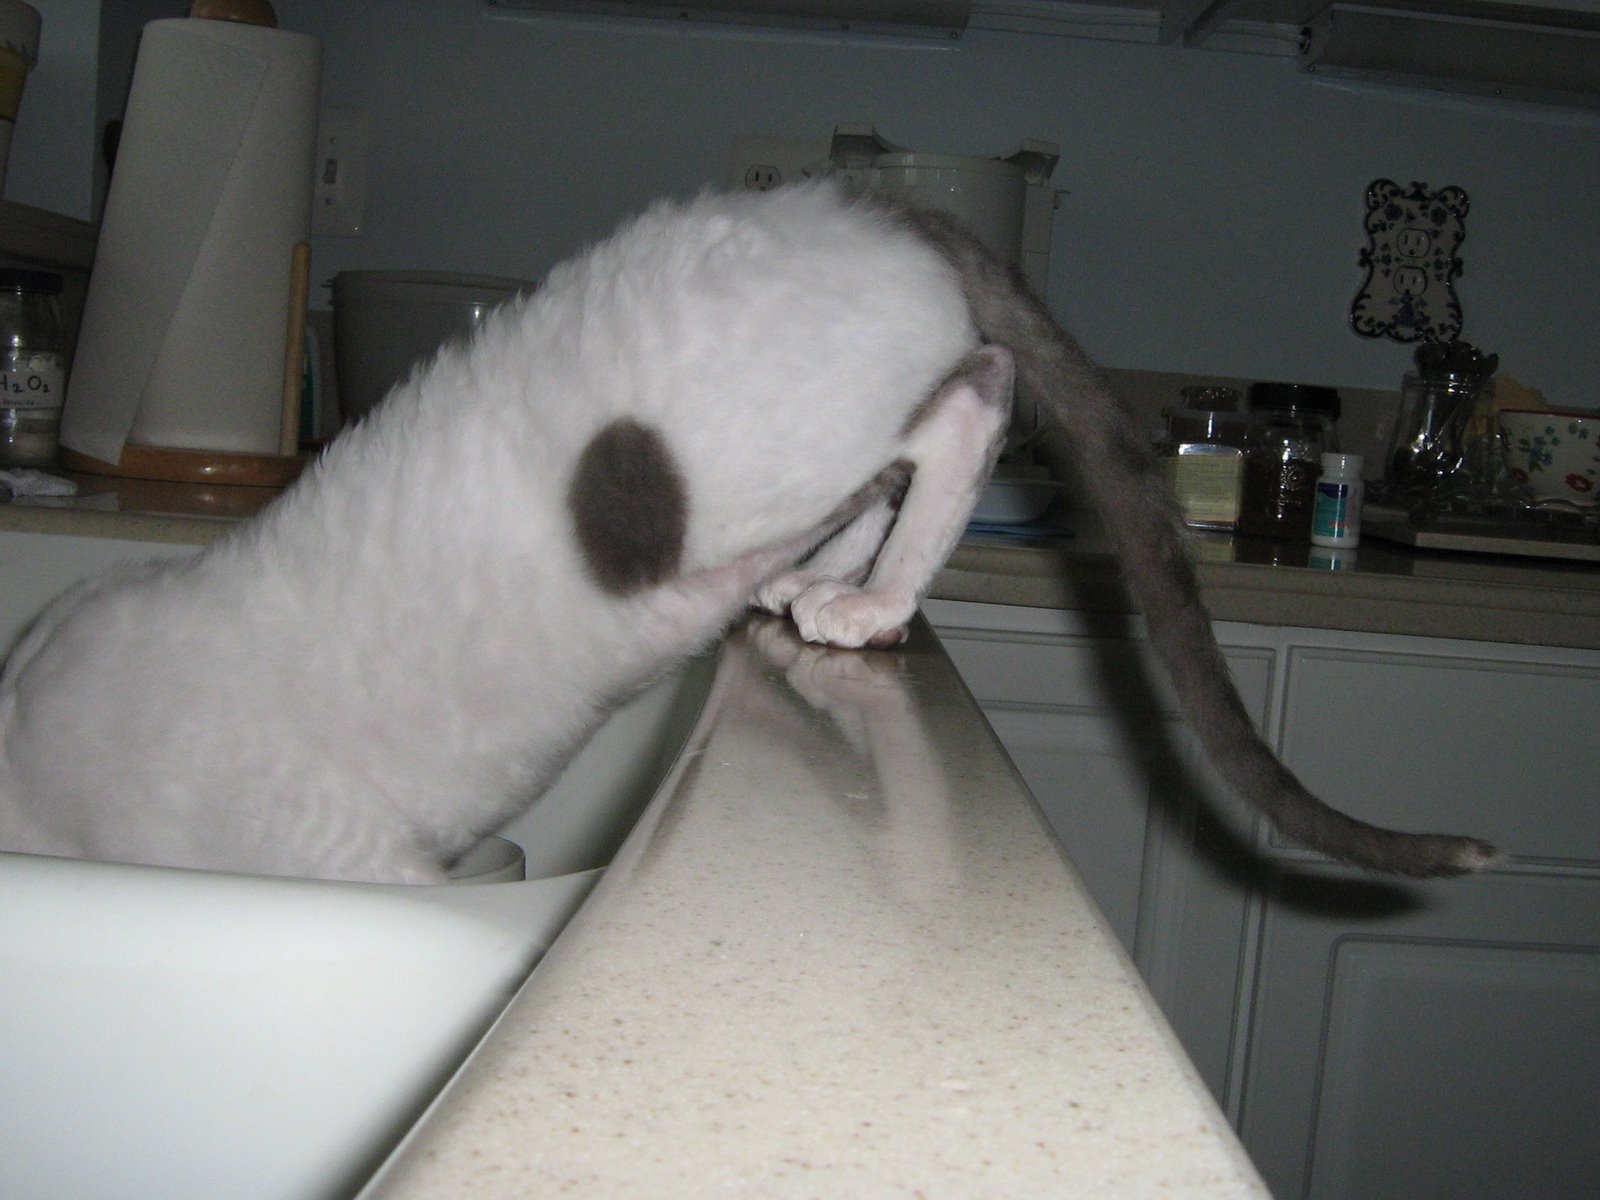 [Pierro+licking+the+sink.JPG]